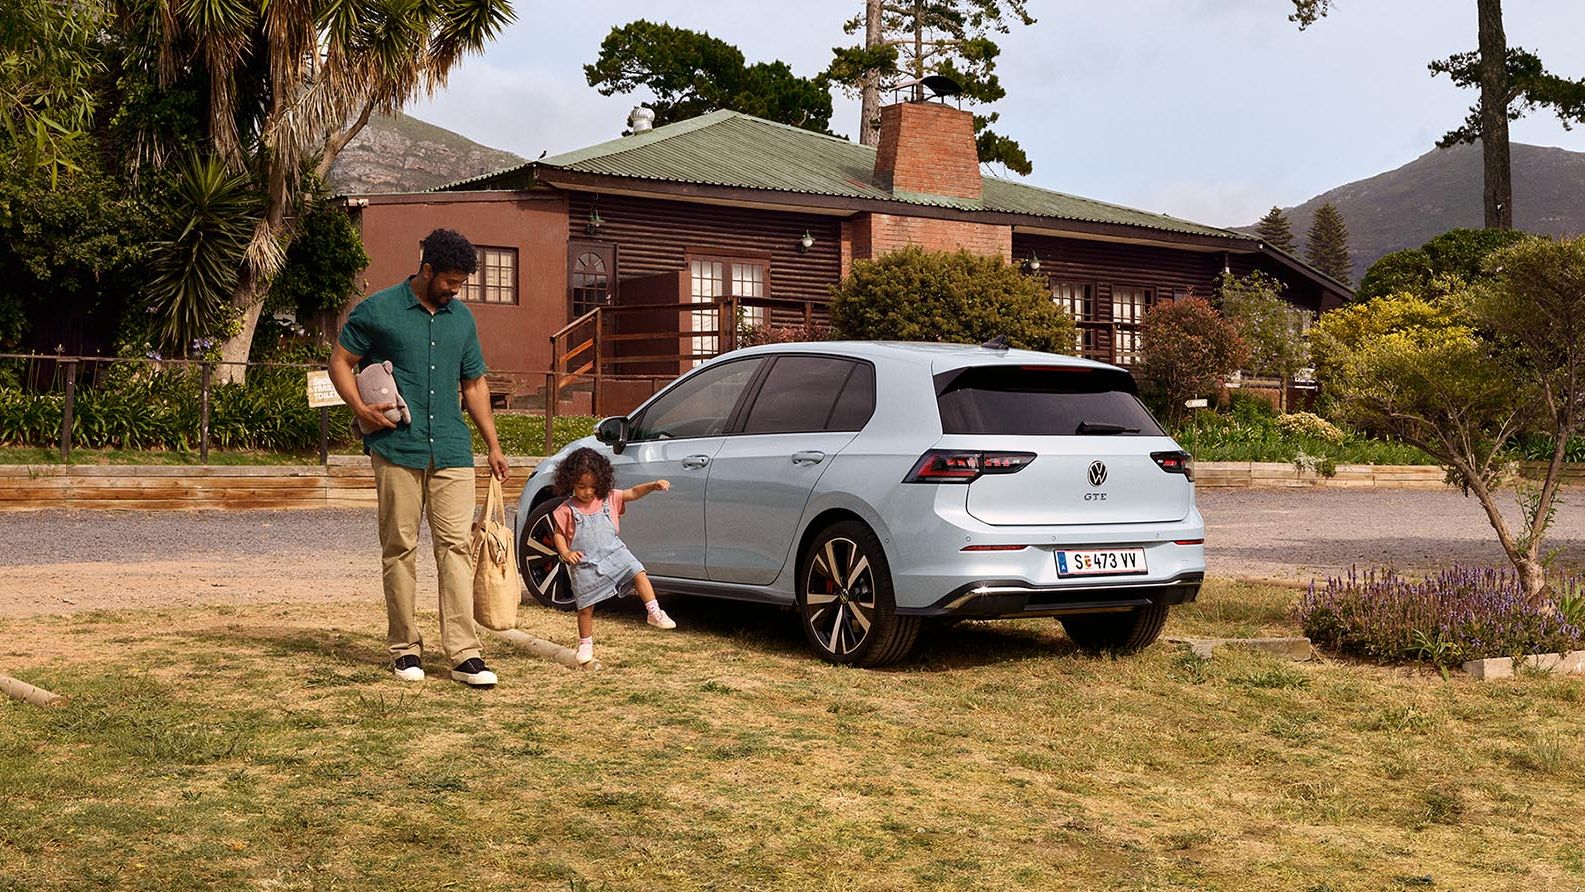 Der neue VW Golf GTE steht auf einem Parkplatz in der Wiese, Vater und Tochter stehen daneben